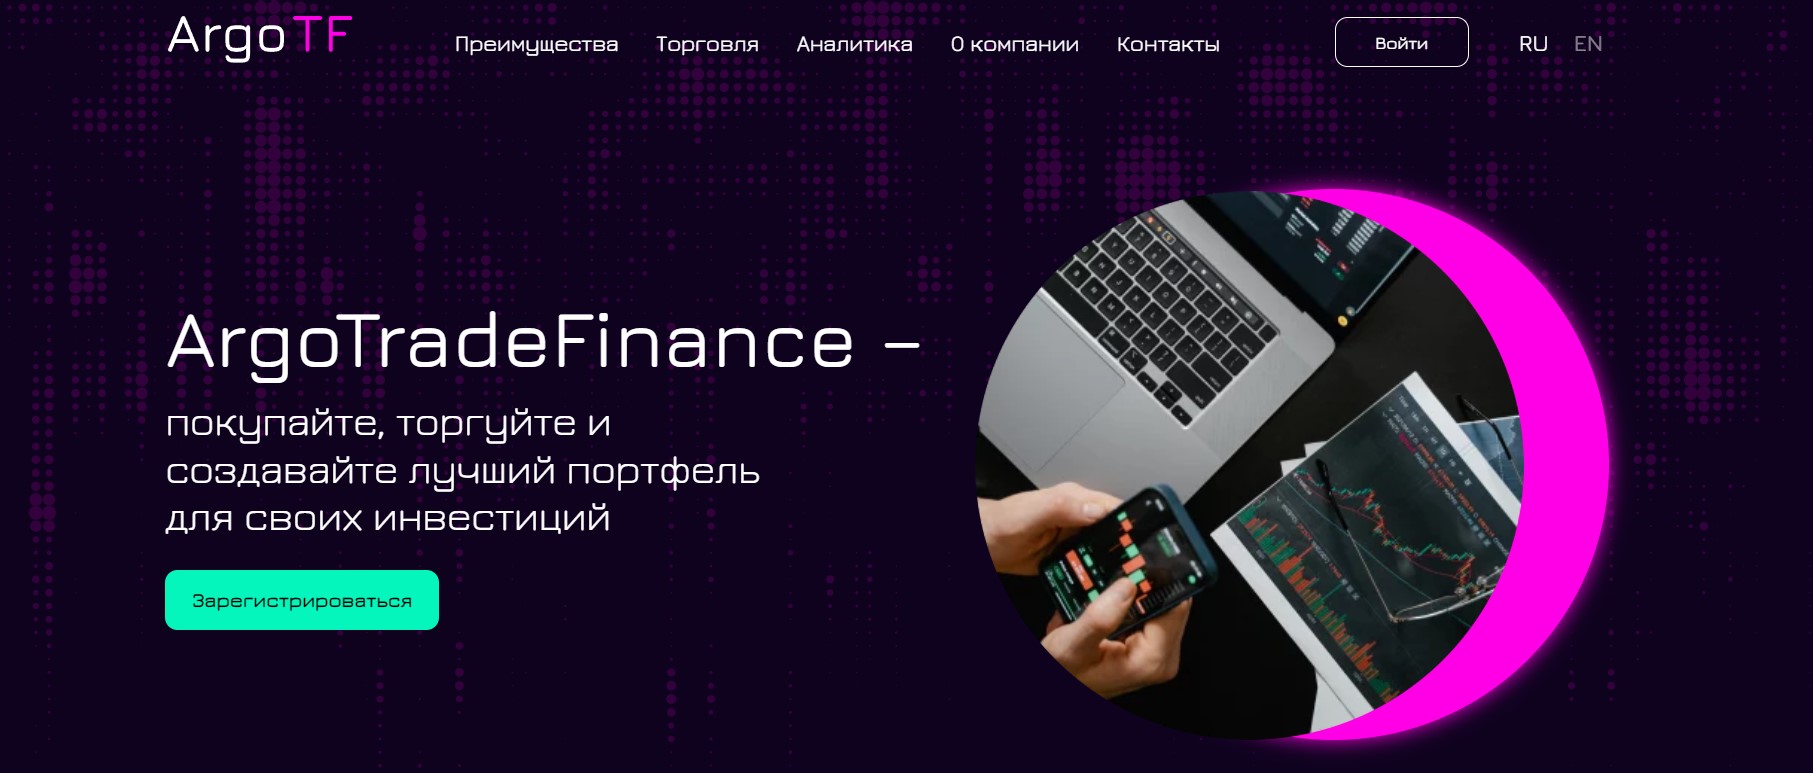 ArgoTradeFinance 